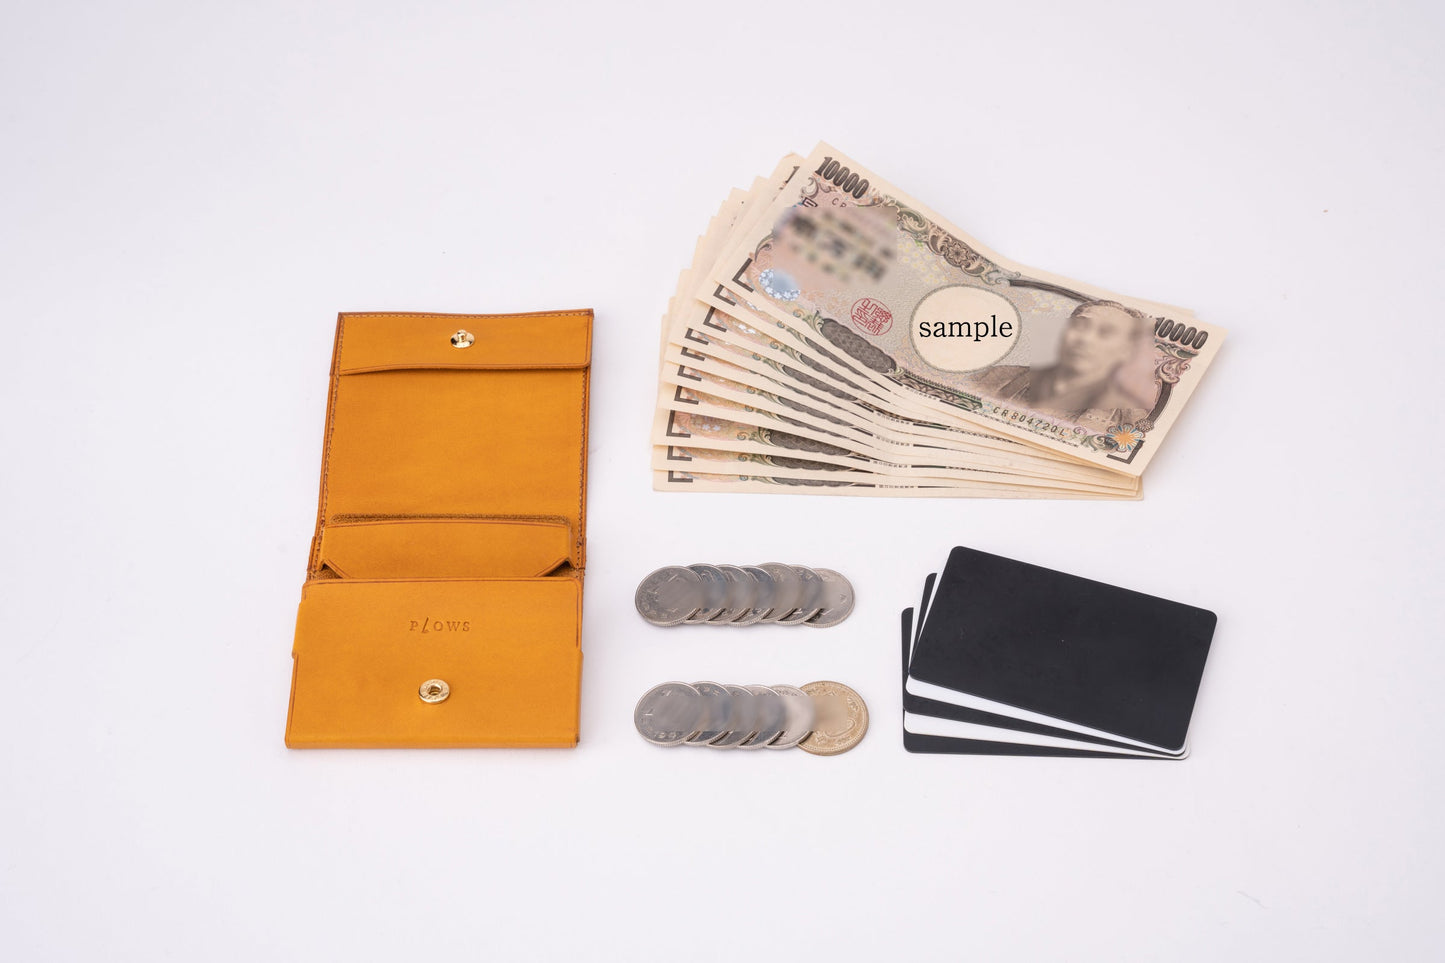 もっと 小さく薄い財布 dritto 2 thin　左利き用